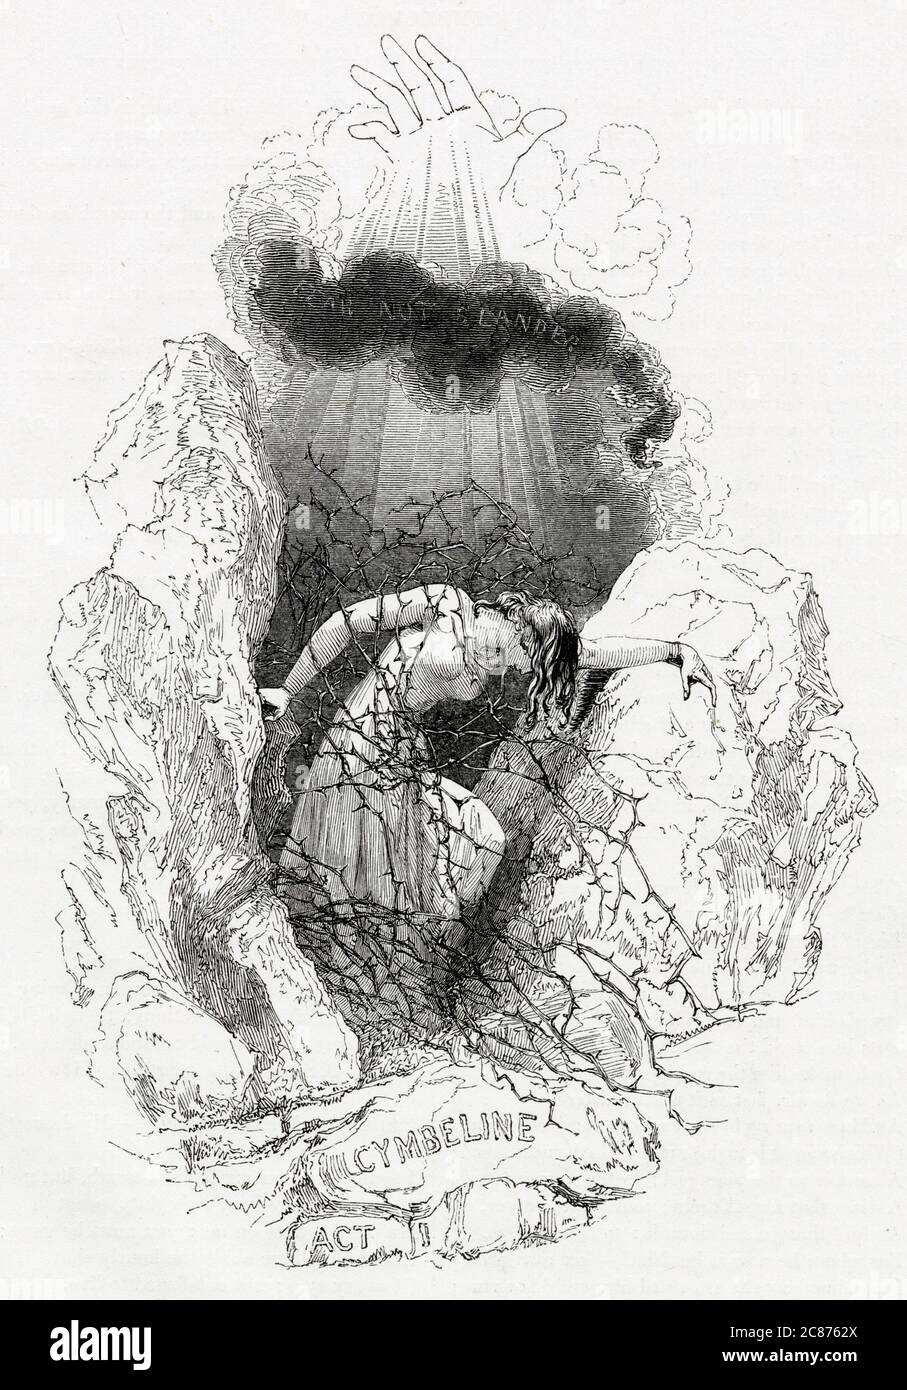 Illustration de Kenny Meadows à Cymbeline, par William Shakespeare. Illustration d'introduction à l'acte I, montrant Imogen luttant à travers des branches épineuses. Date: 1840 Banque D'Images